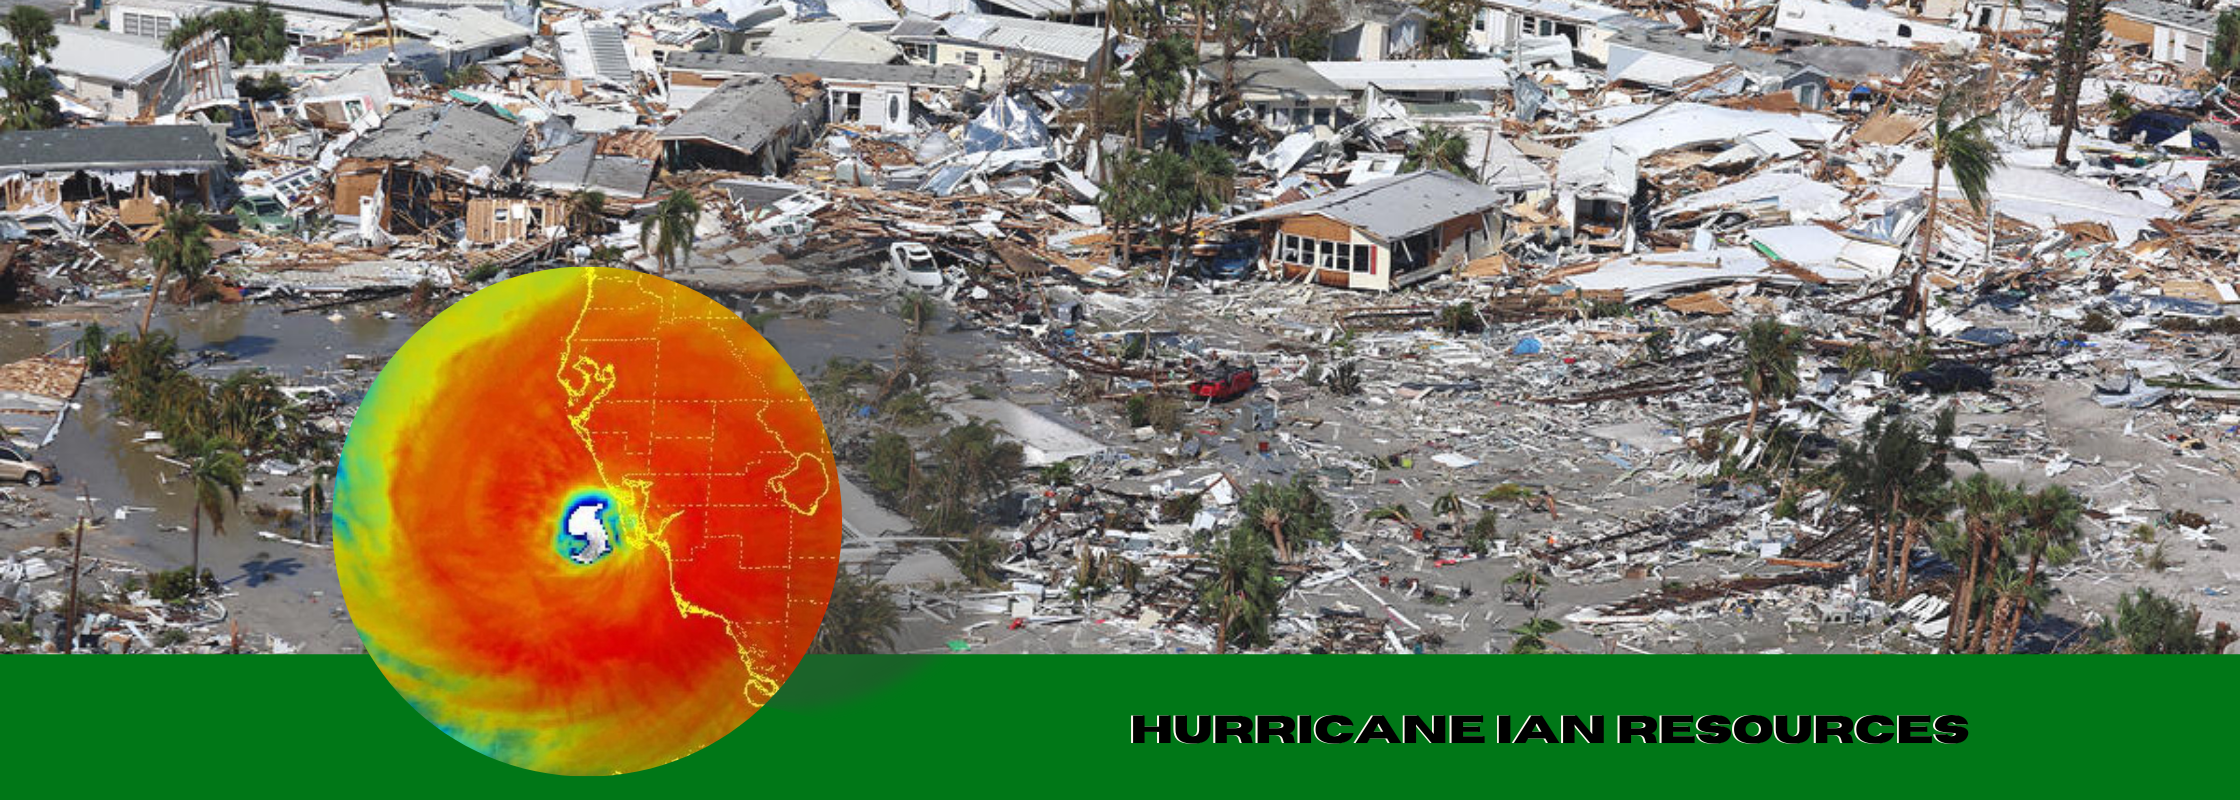 Hurricane Ian Resource Page